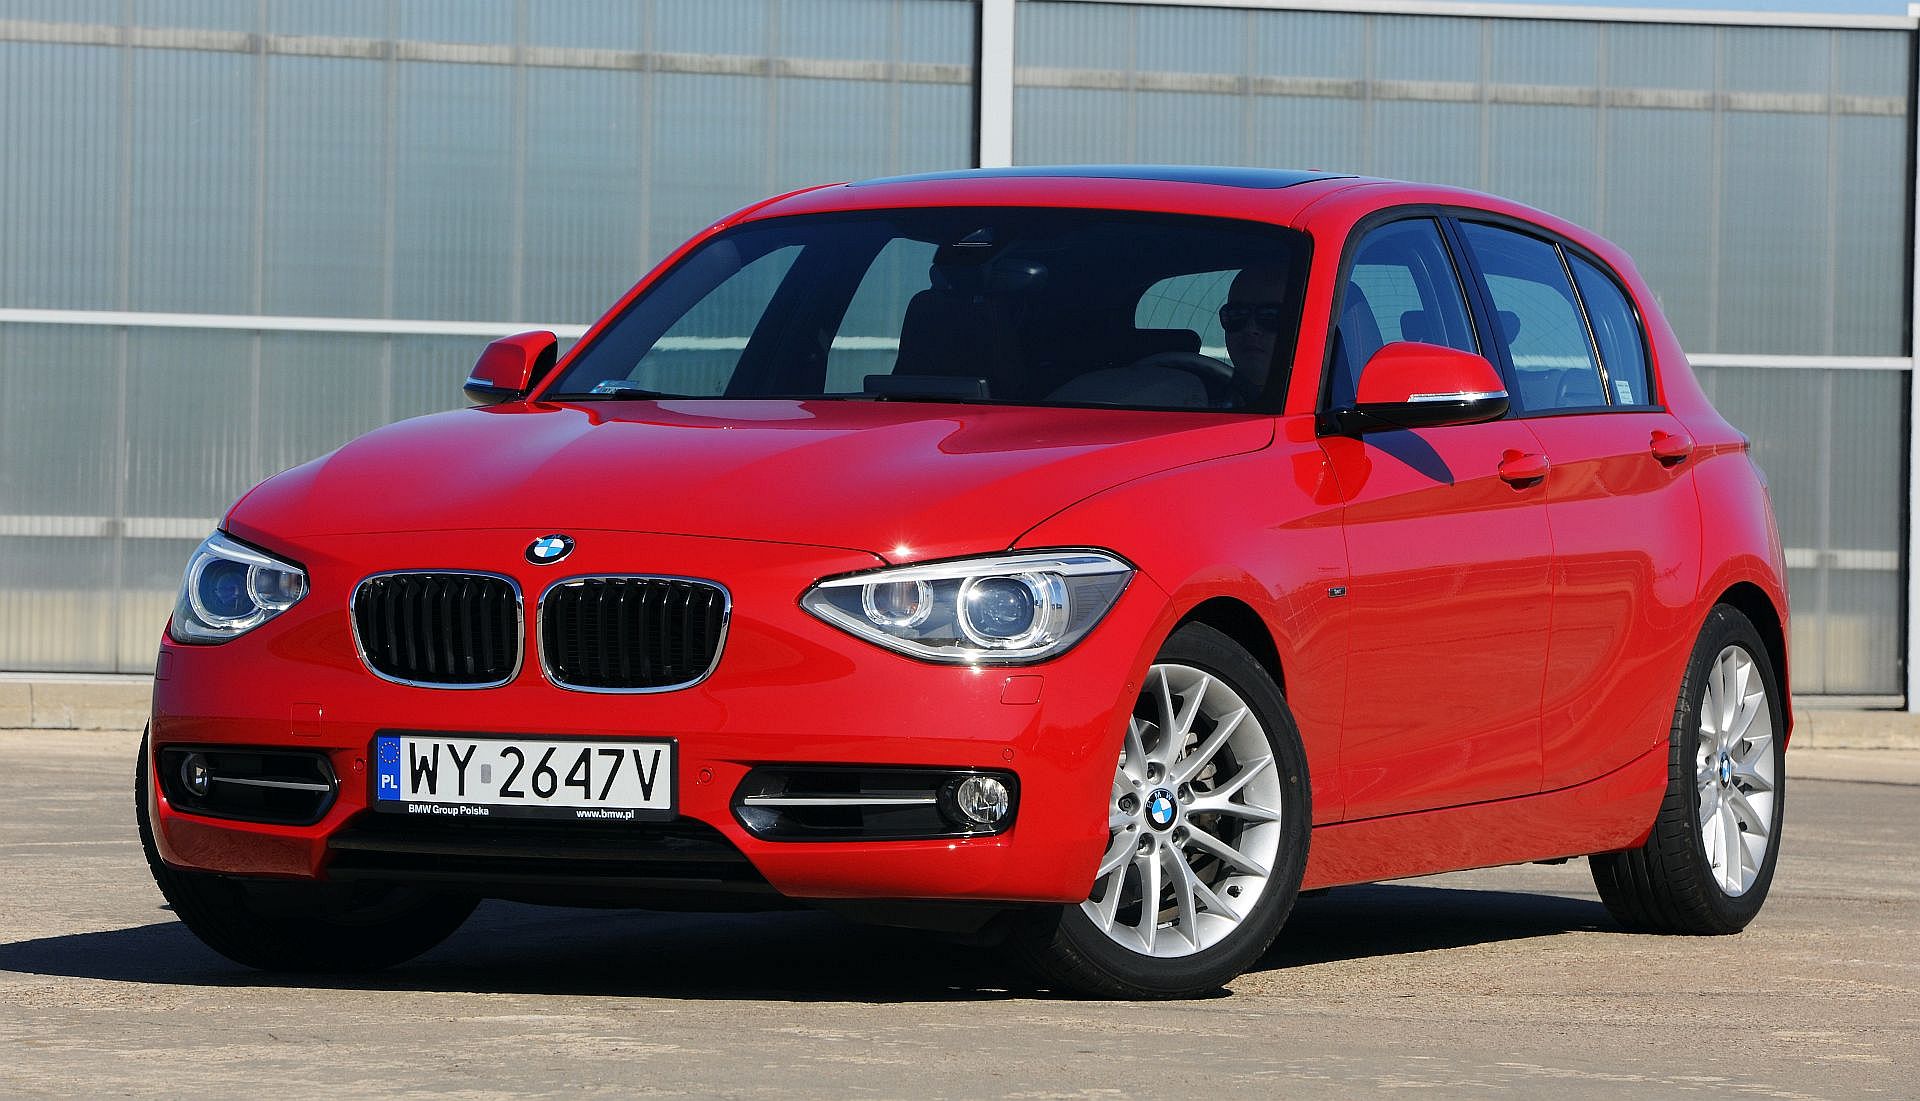 Używane BMW serii 1 I (E87) i BMW serii 1 II (F20) - którą generację wybrać?